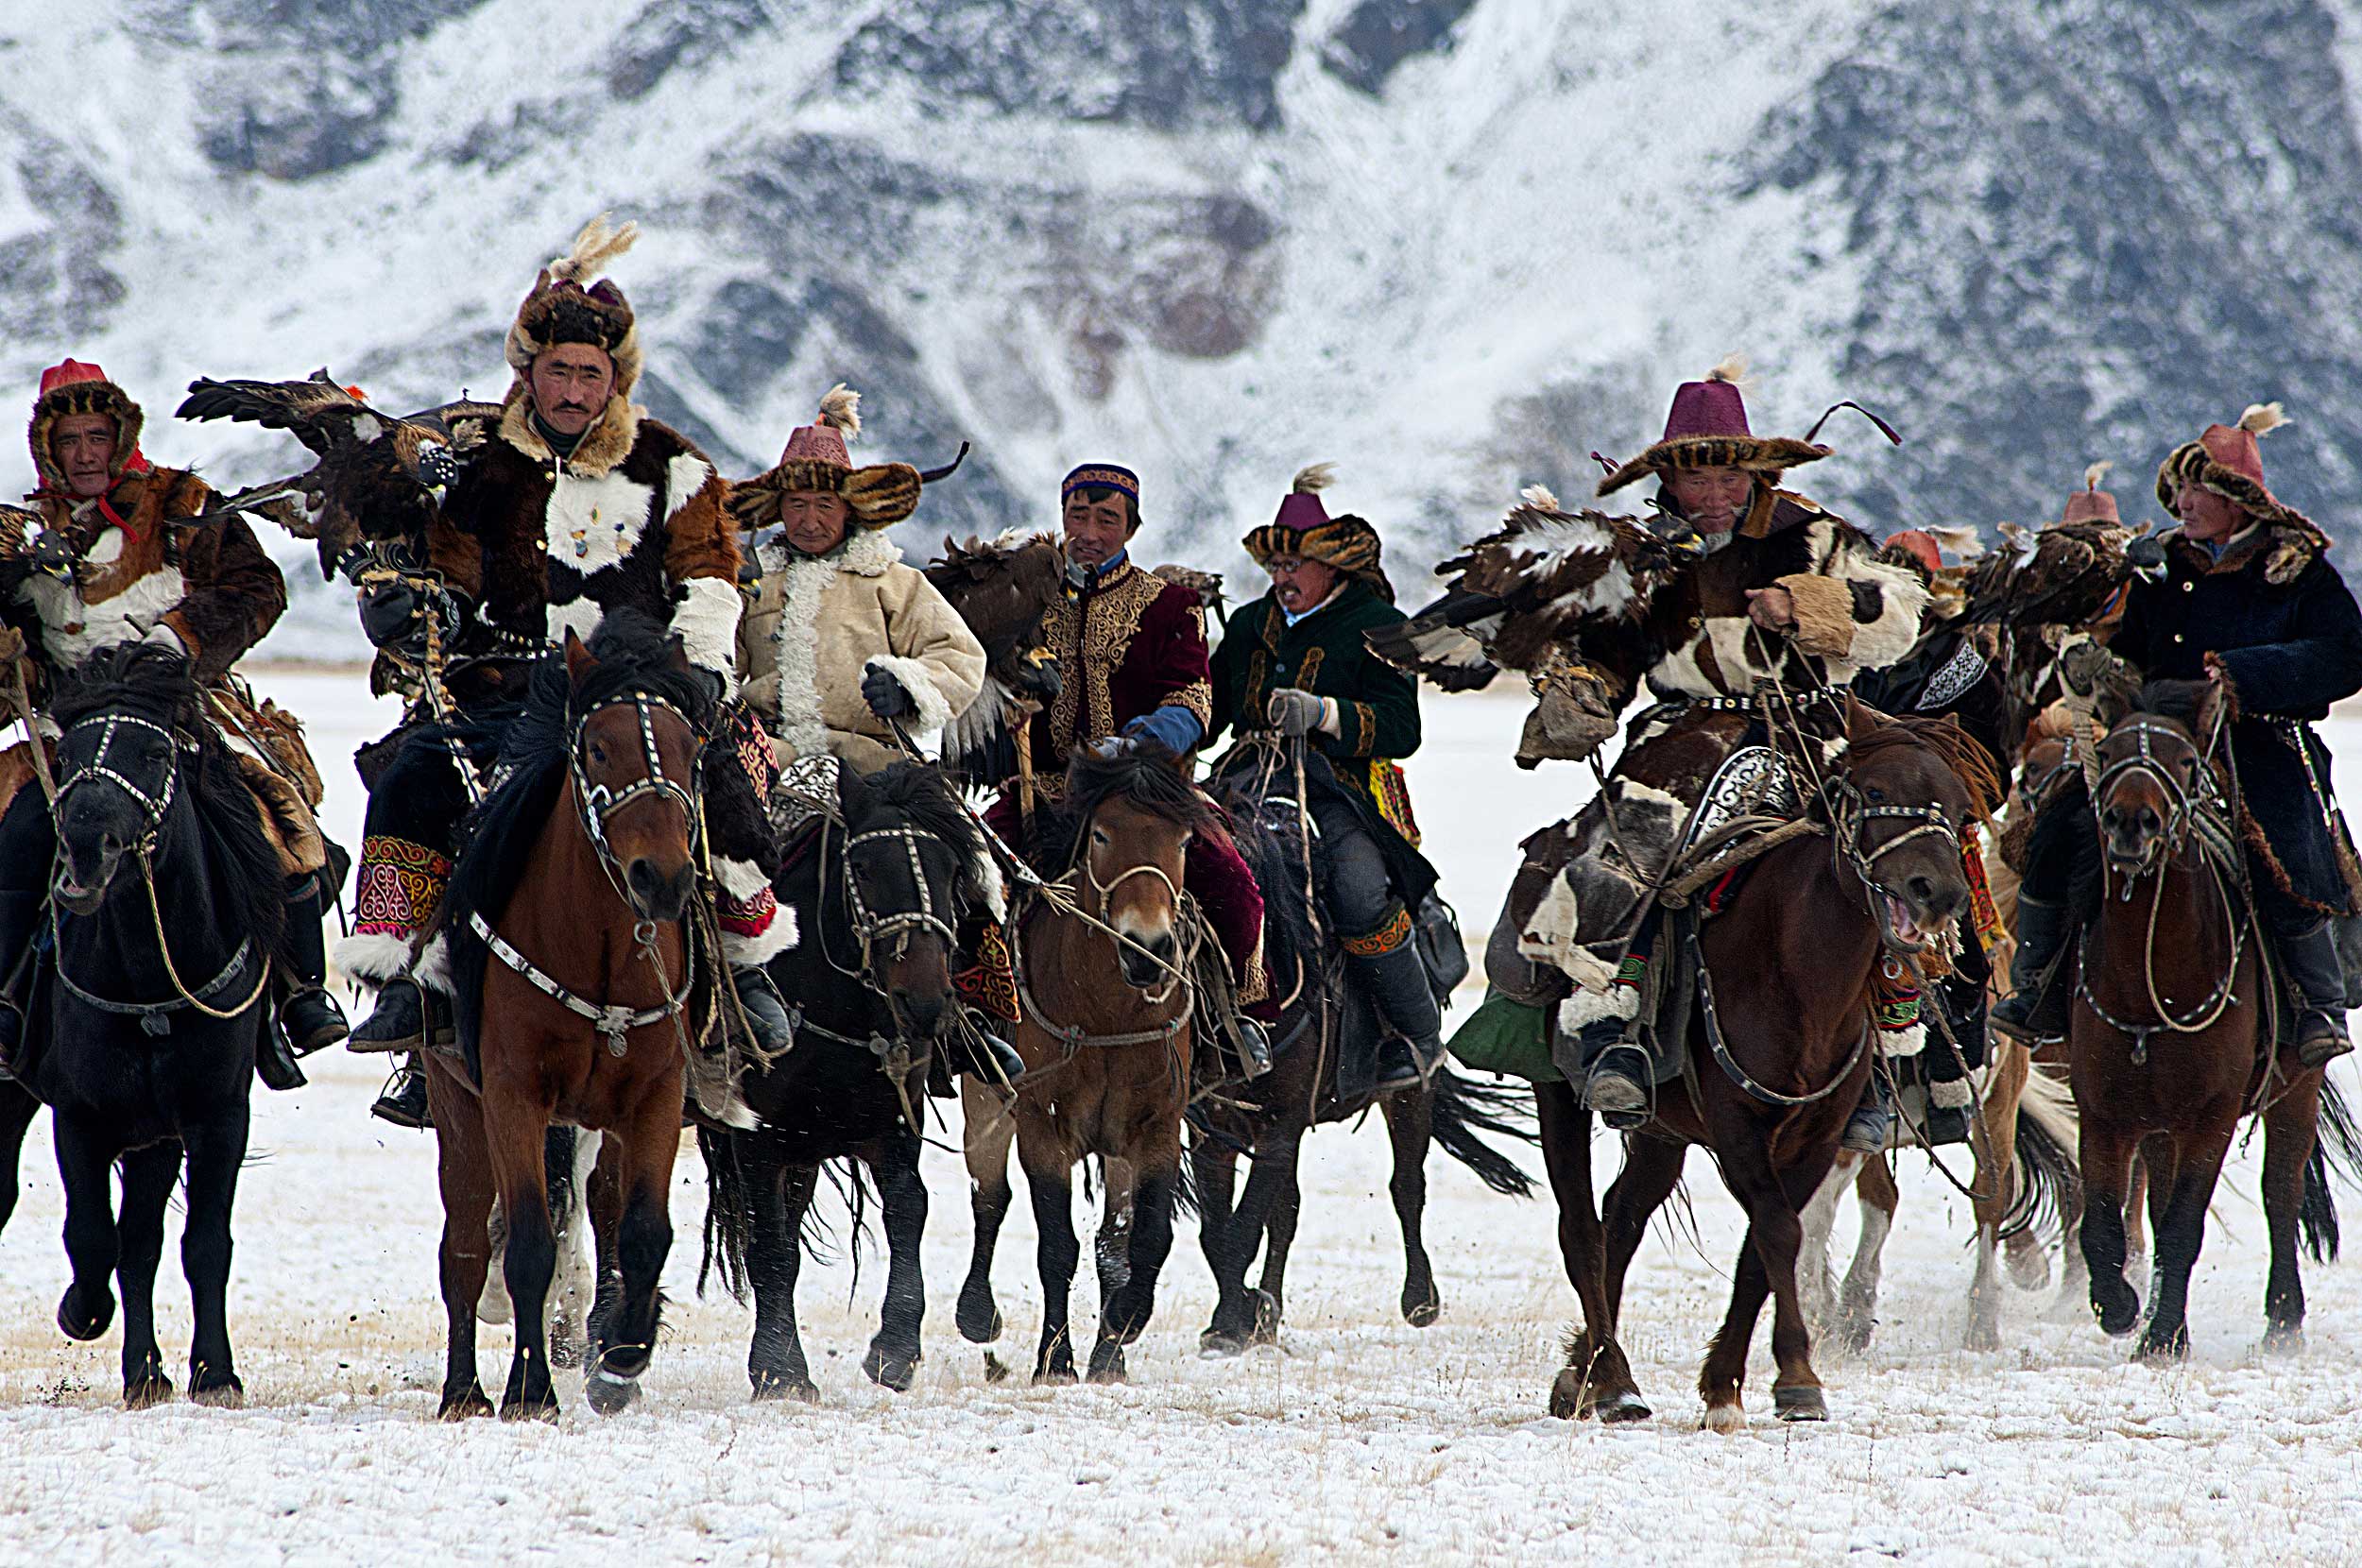 Group of Mongolian huntsmen on horses.